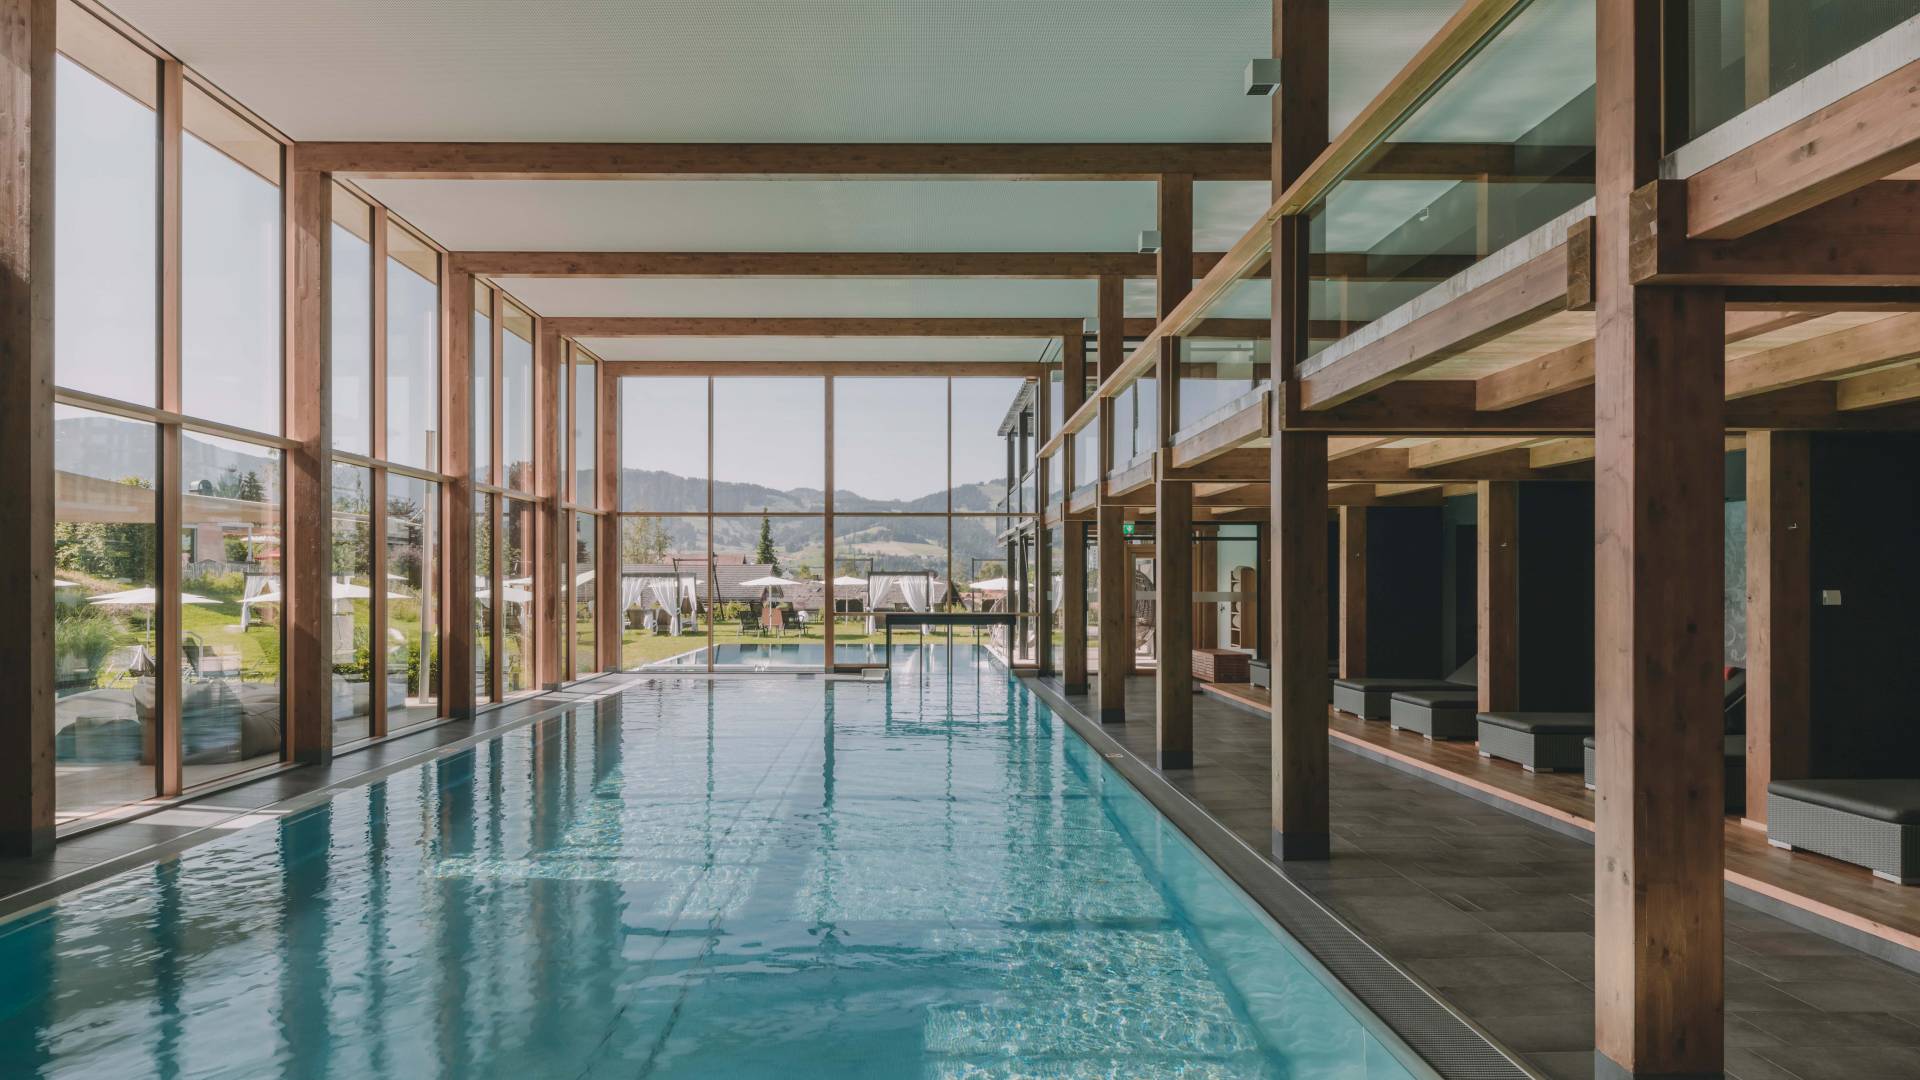 Großer Pool im Wellnessbereich mit Holzbalken und großer Fensterfront.